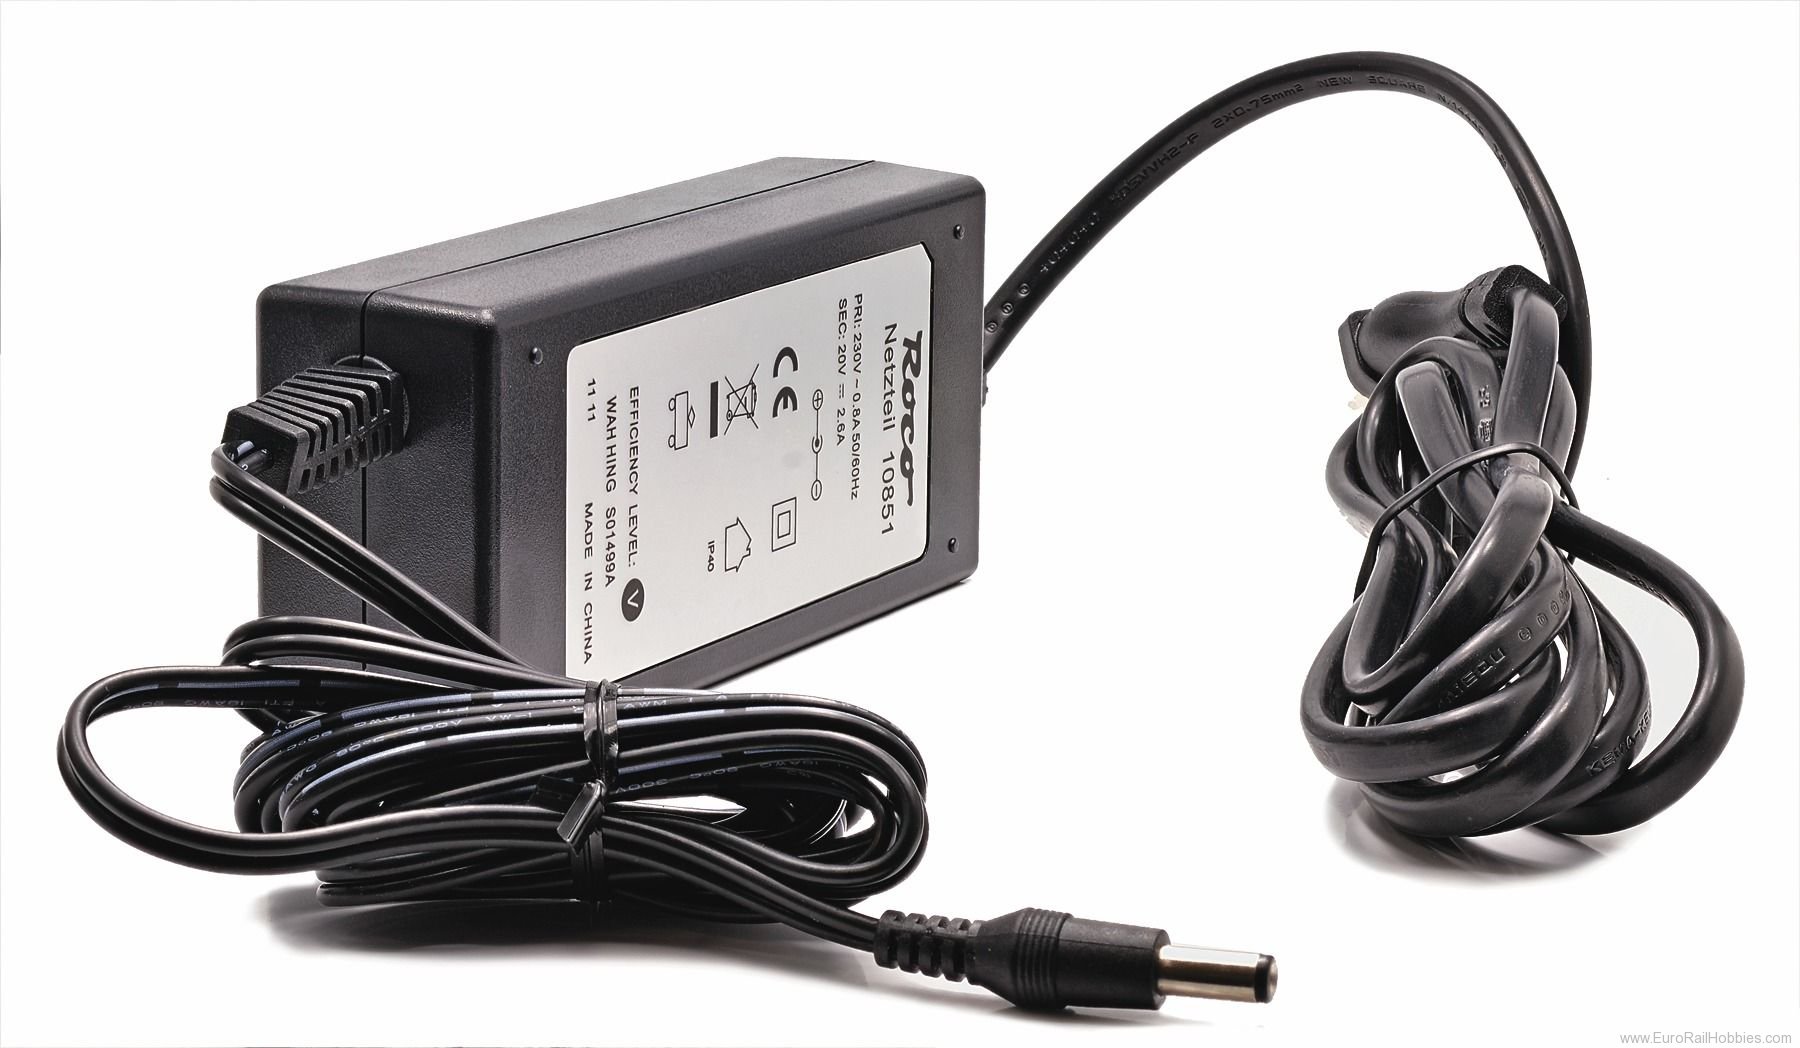 Roco 10851 Digital Switch Power Supply (230V - 54VA)